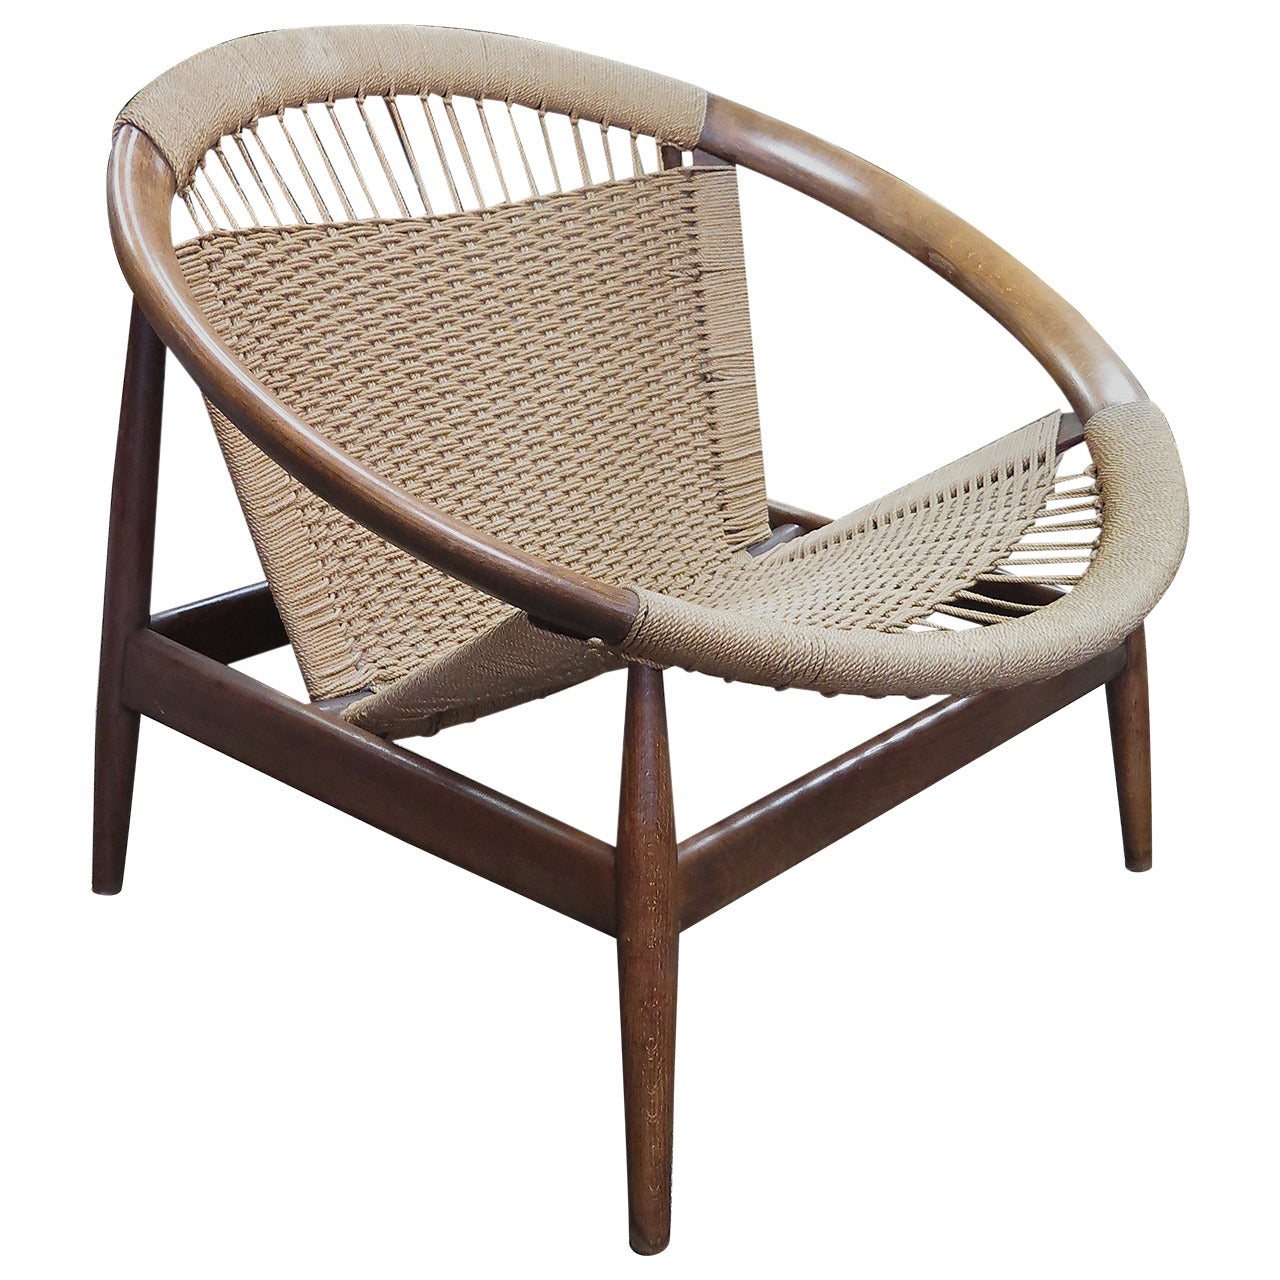 Illum Wikkelso Ringstol Chair, 1950